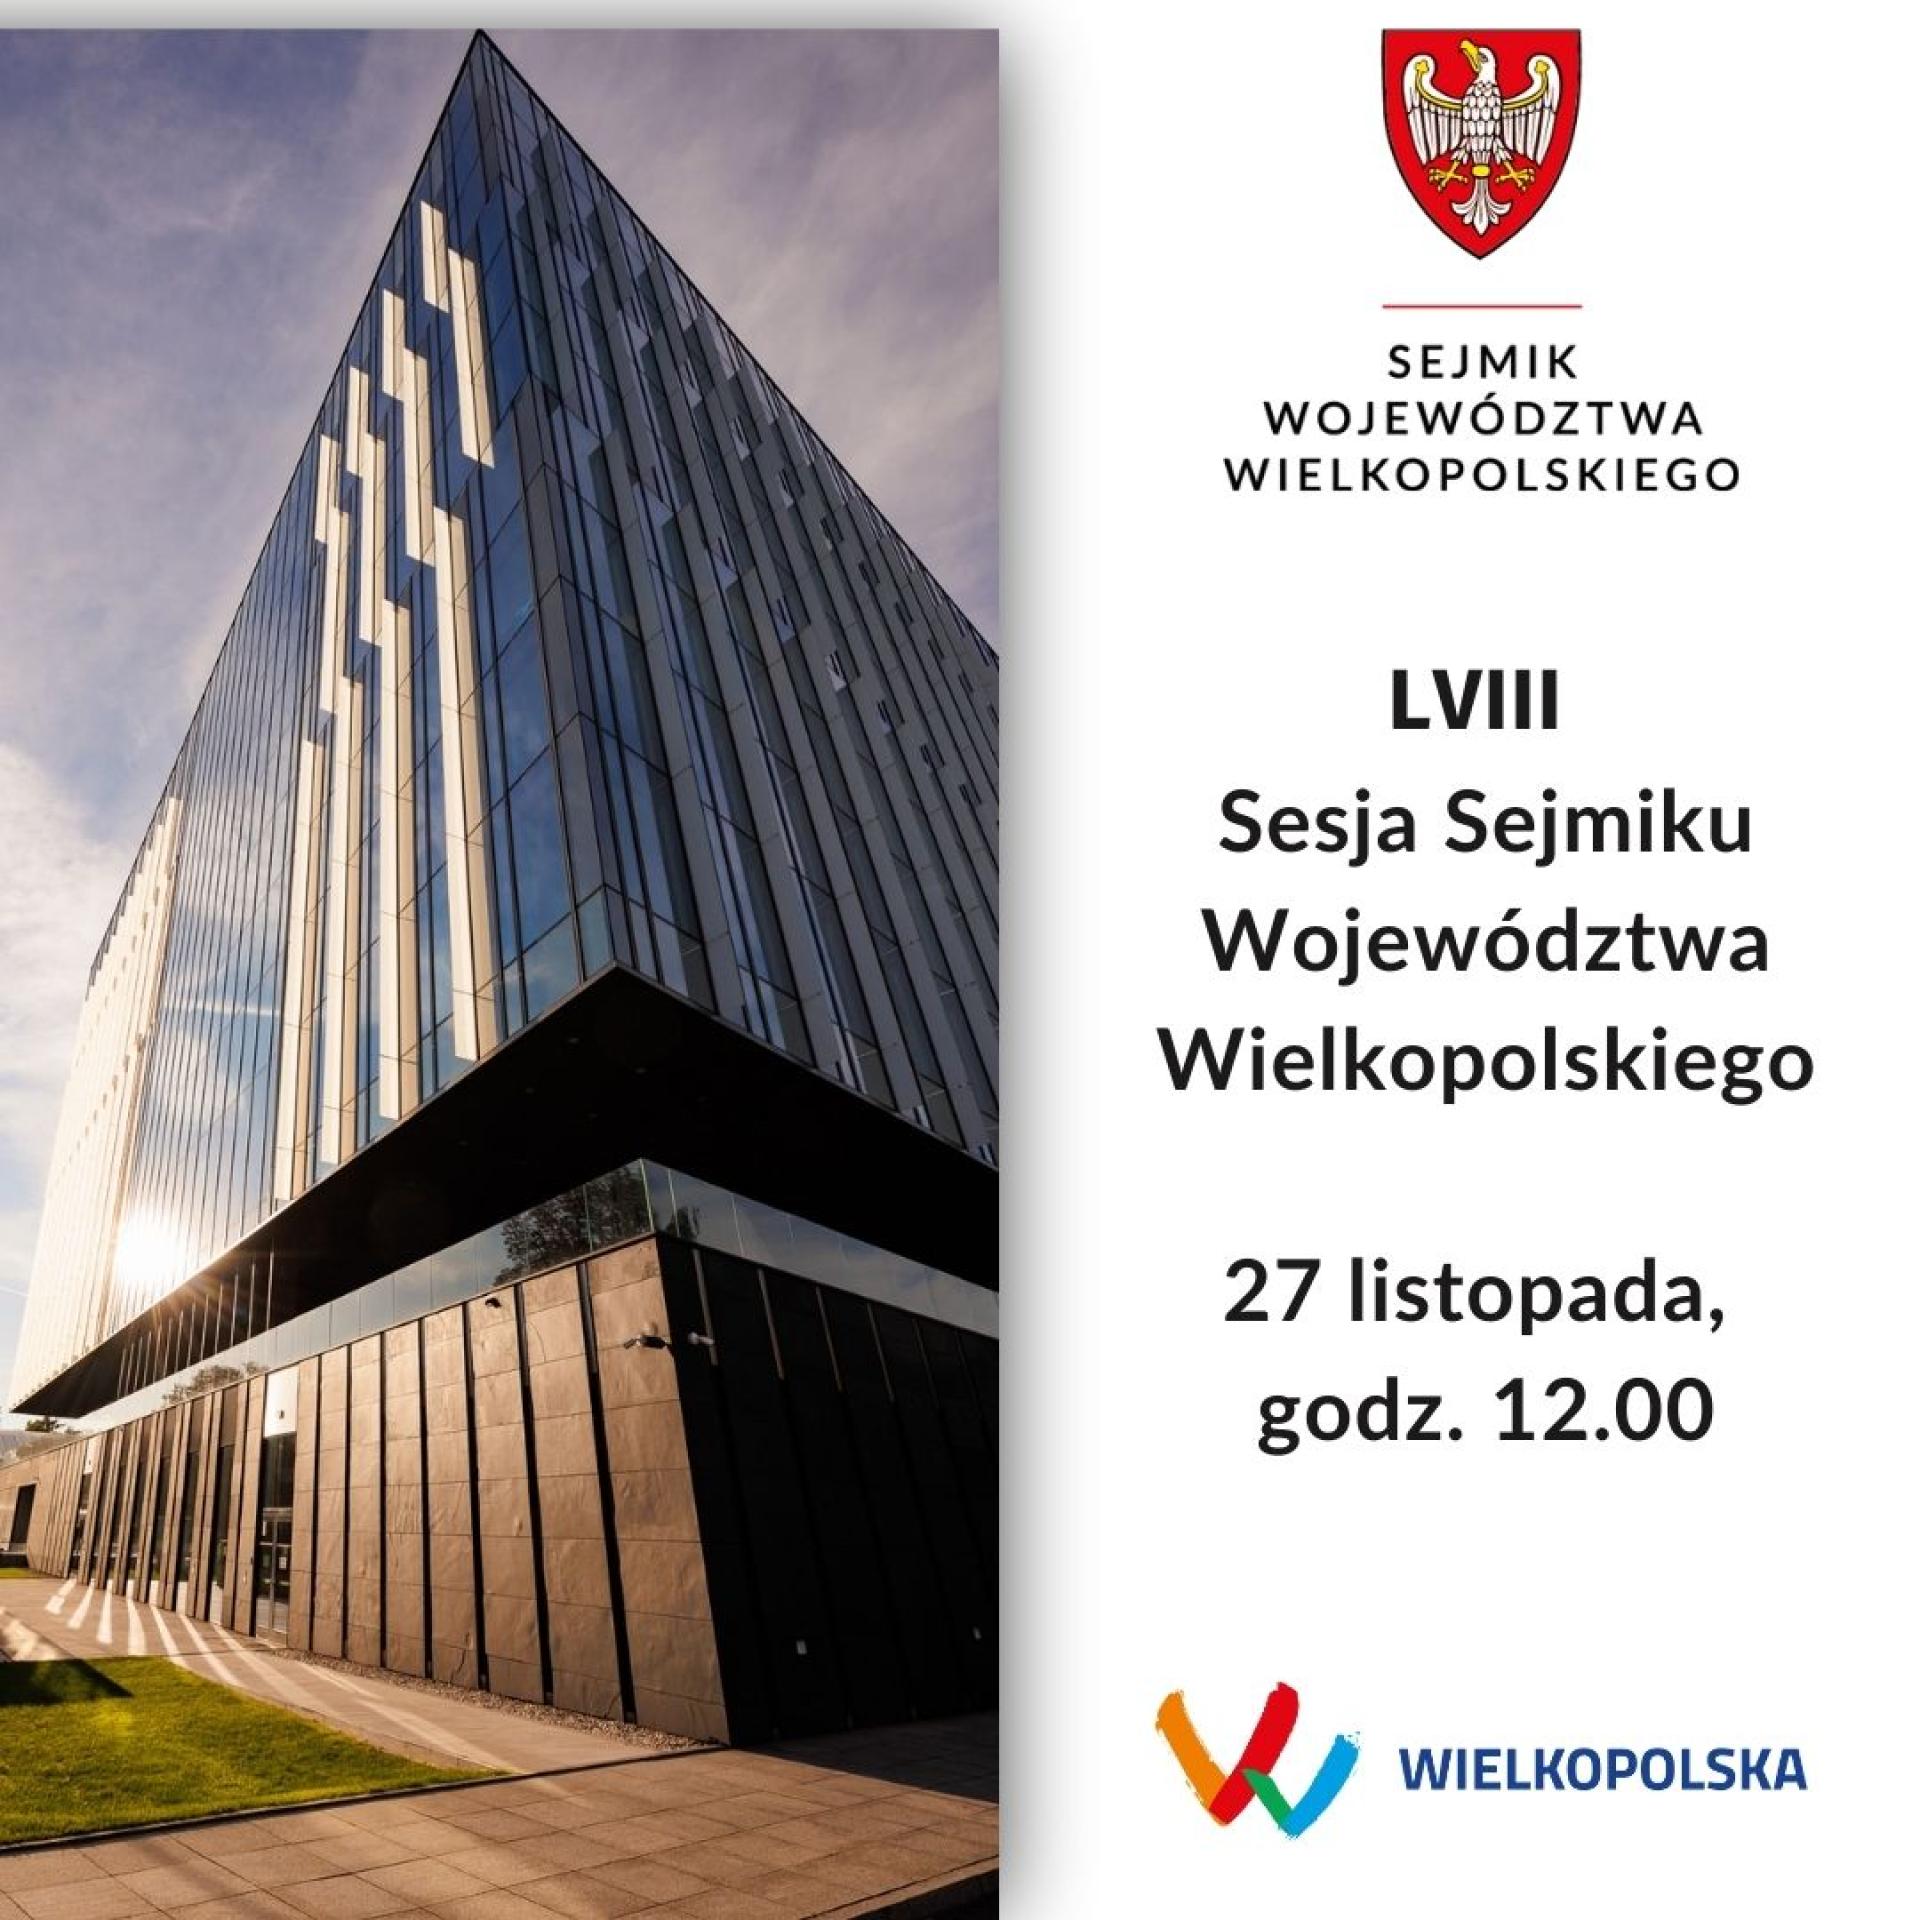 Sesja Sejmiku Województwa Wielkopolskiego w poniedziałek 27 listopada  - zobacz więcej